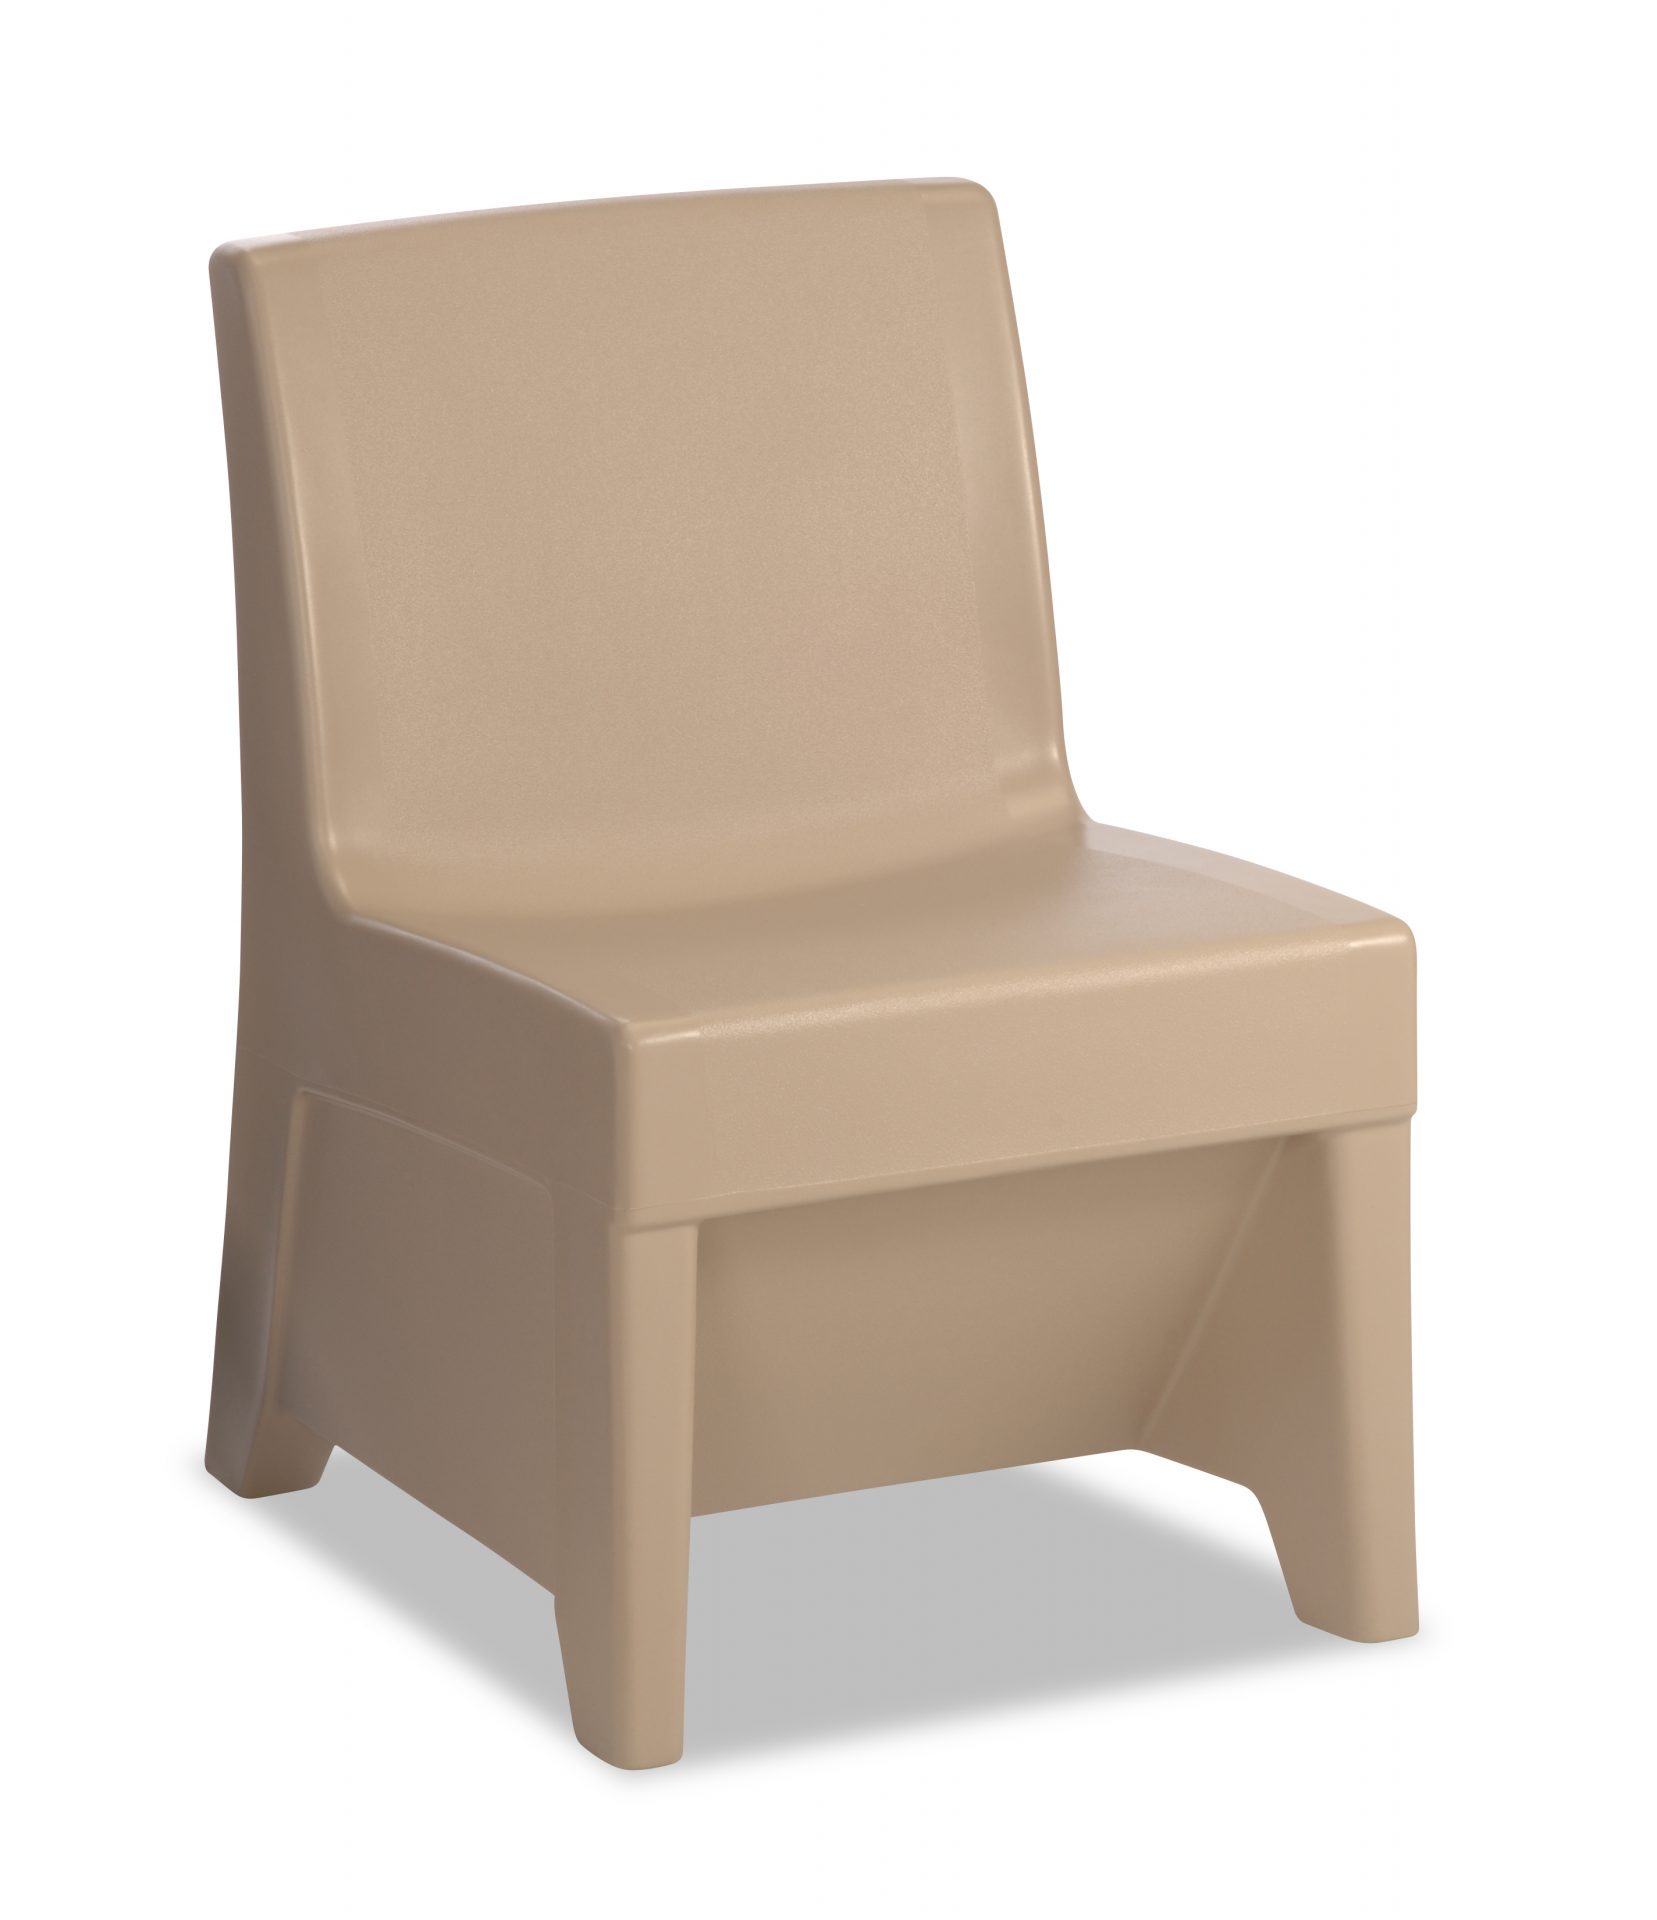 River Rock color ligature resistant chair